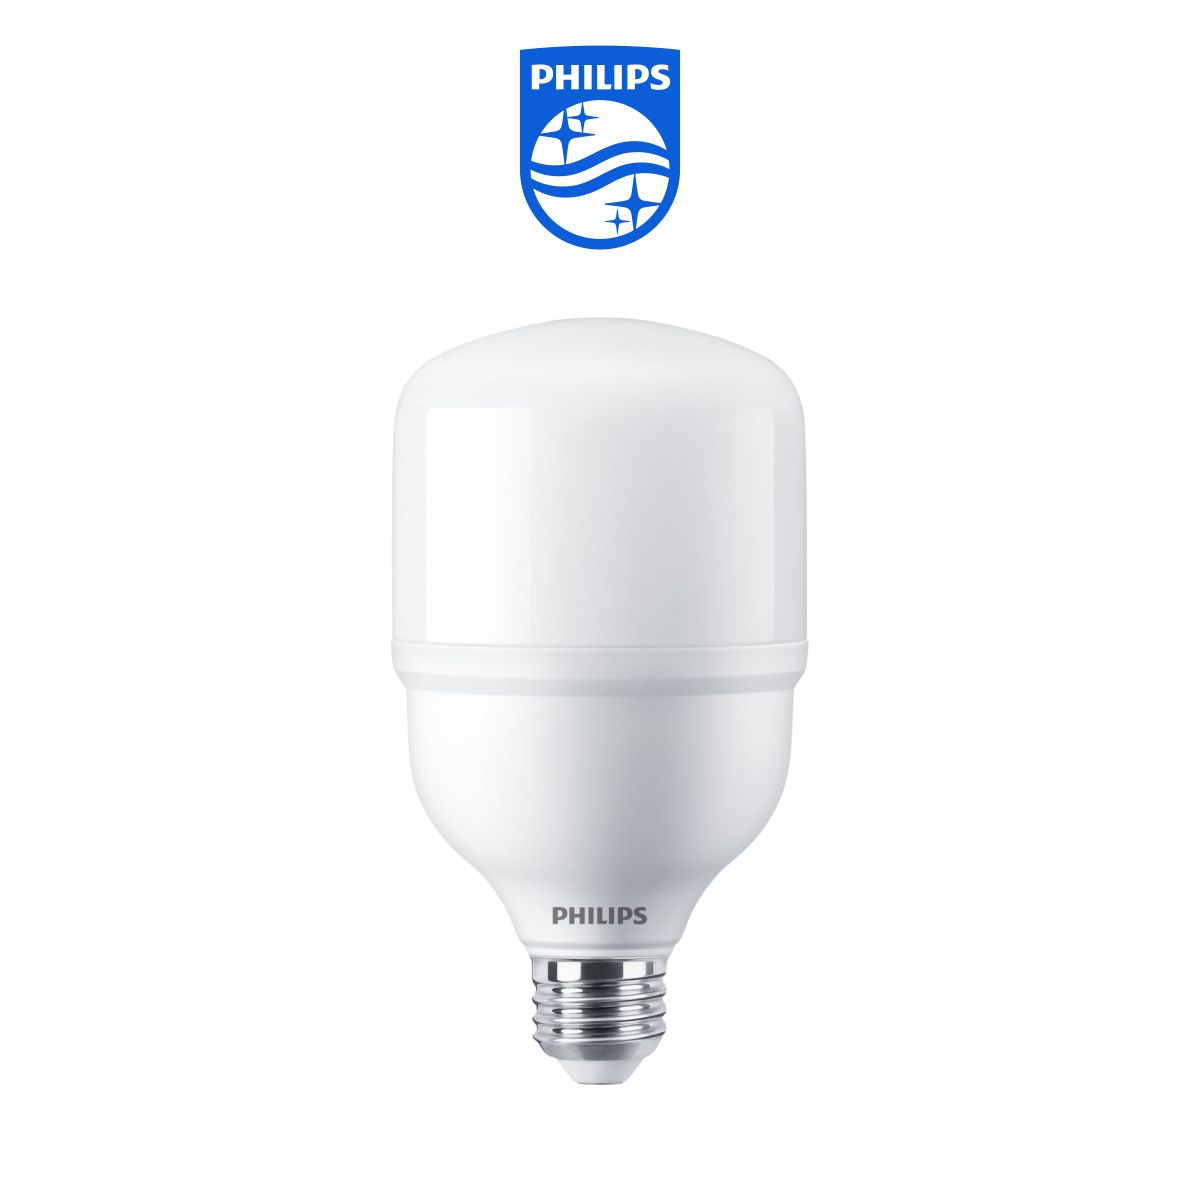 Hình ảnh Bóng đèn Philips TrueForce Essential LED HB MV E27 - Ánh sáng Trắng, Hiệu suất chiếu sáng cao, Tiết kiệm điện, Chất lượng ánh sáng hoàn hảo - Hàng Chính Hãng